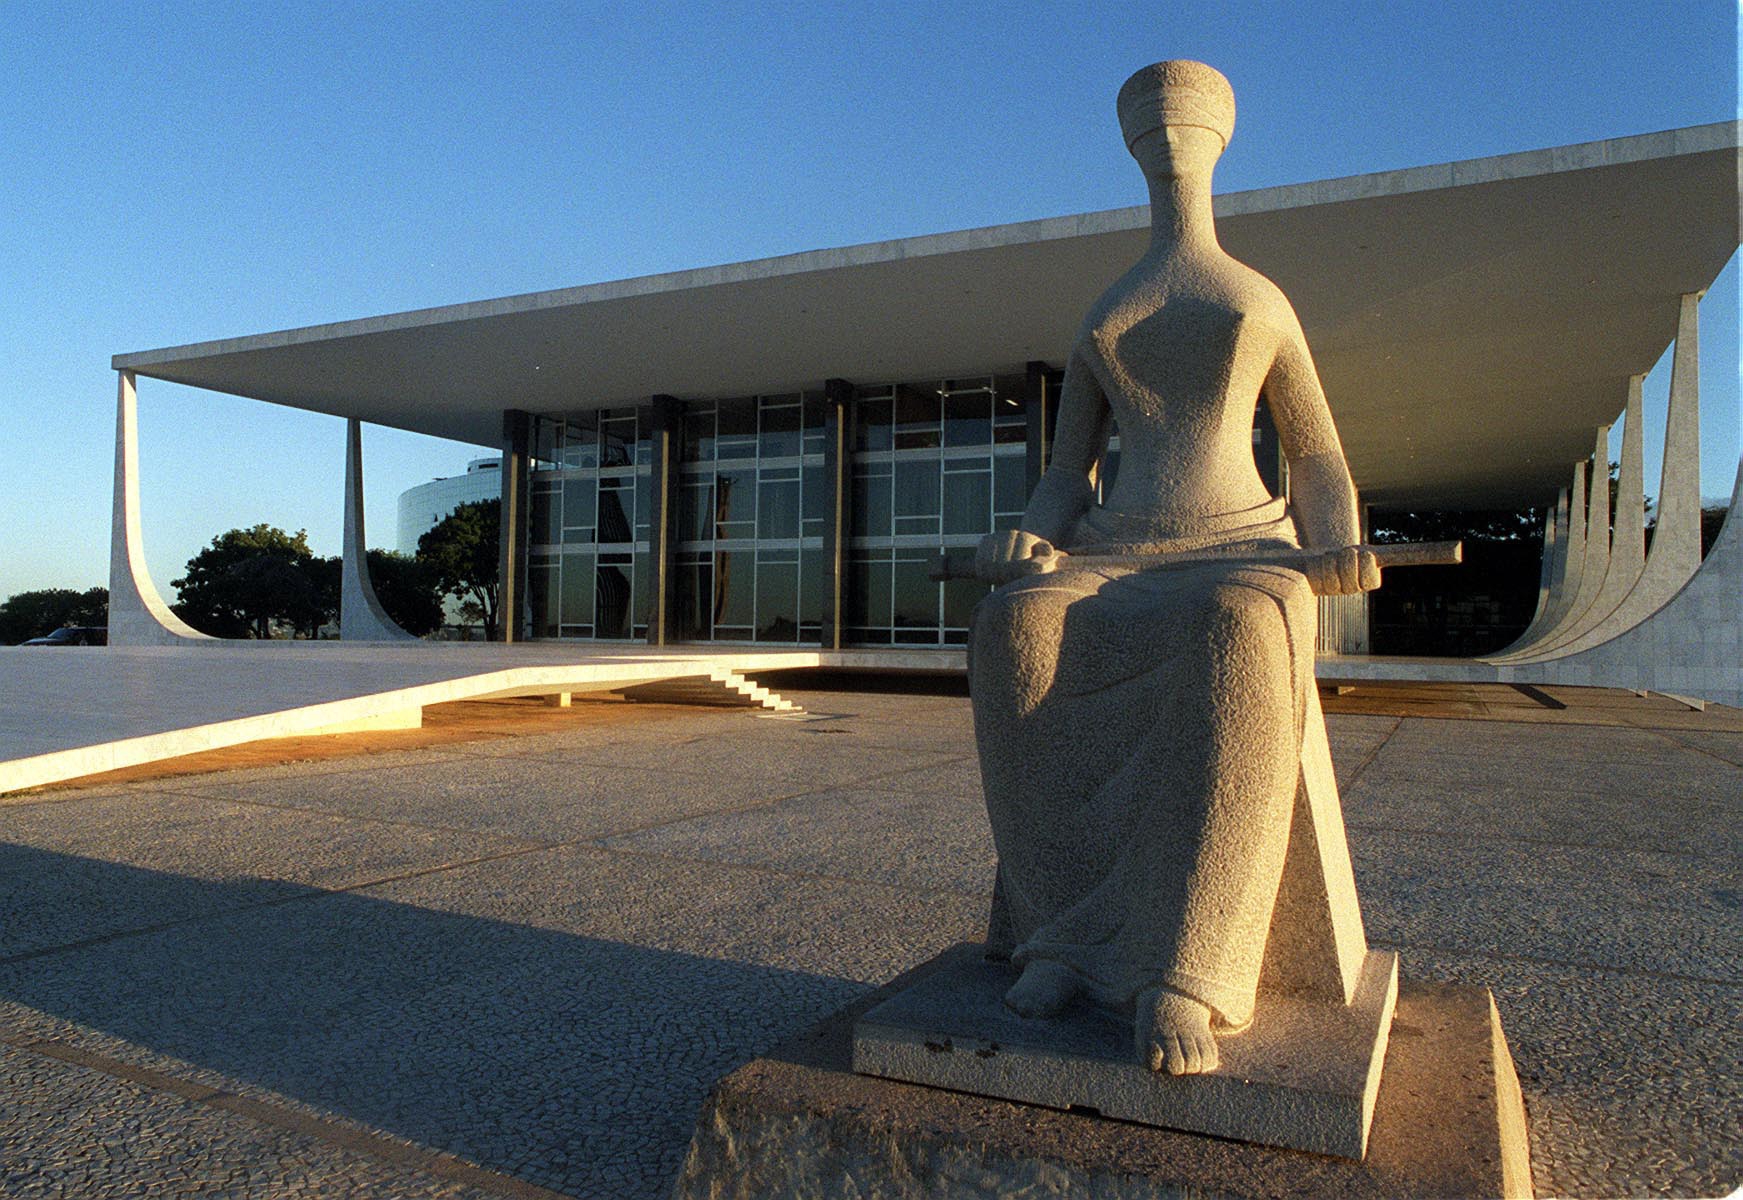 DF - TURISMO/DF - VARIEDADES - Estátua da Justiça em frente ao prédio do Supremo Tribunal Federal (STF), na Praça dos Três Poderes, em Brasília (DF). 15/08/2003 - Foto: JOSÉ PAULO LACERDA/AGÊNCIA ESTADO/AE